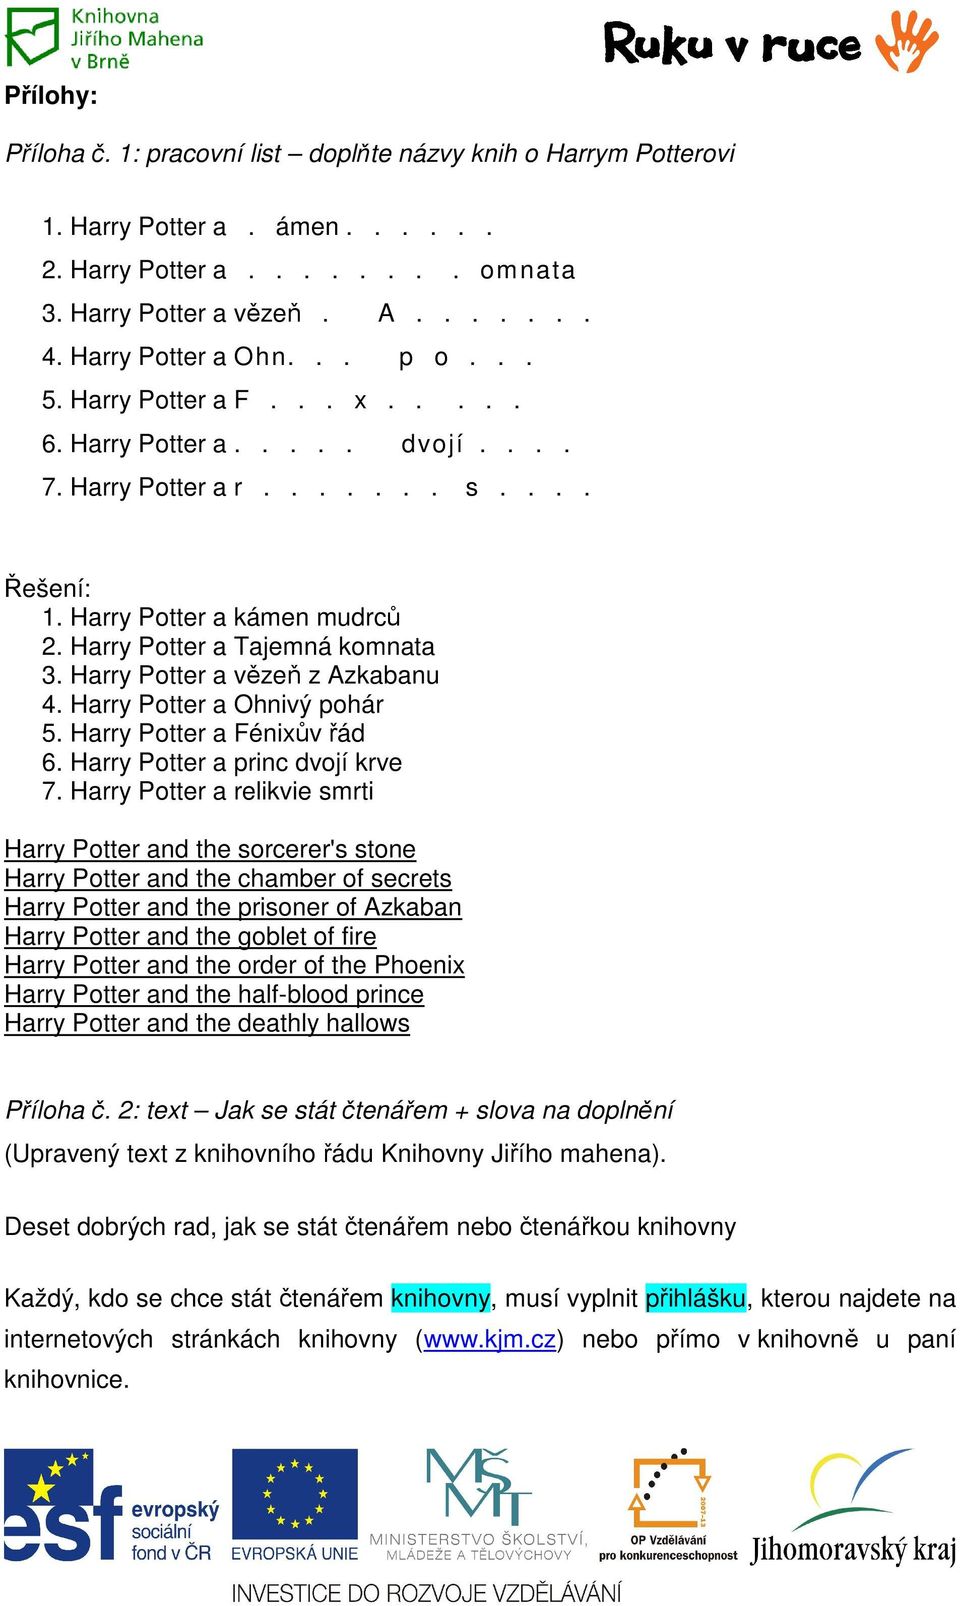 Harry Potter a vězeň z Azkabanu 4. Harry Potter a Ohnivý pohár 5. Harry Potter a Fénixův řád 6. Harry Potter a princ dvojí krve 7.